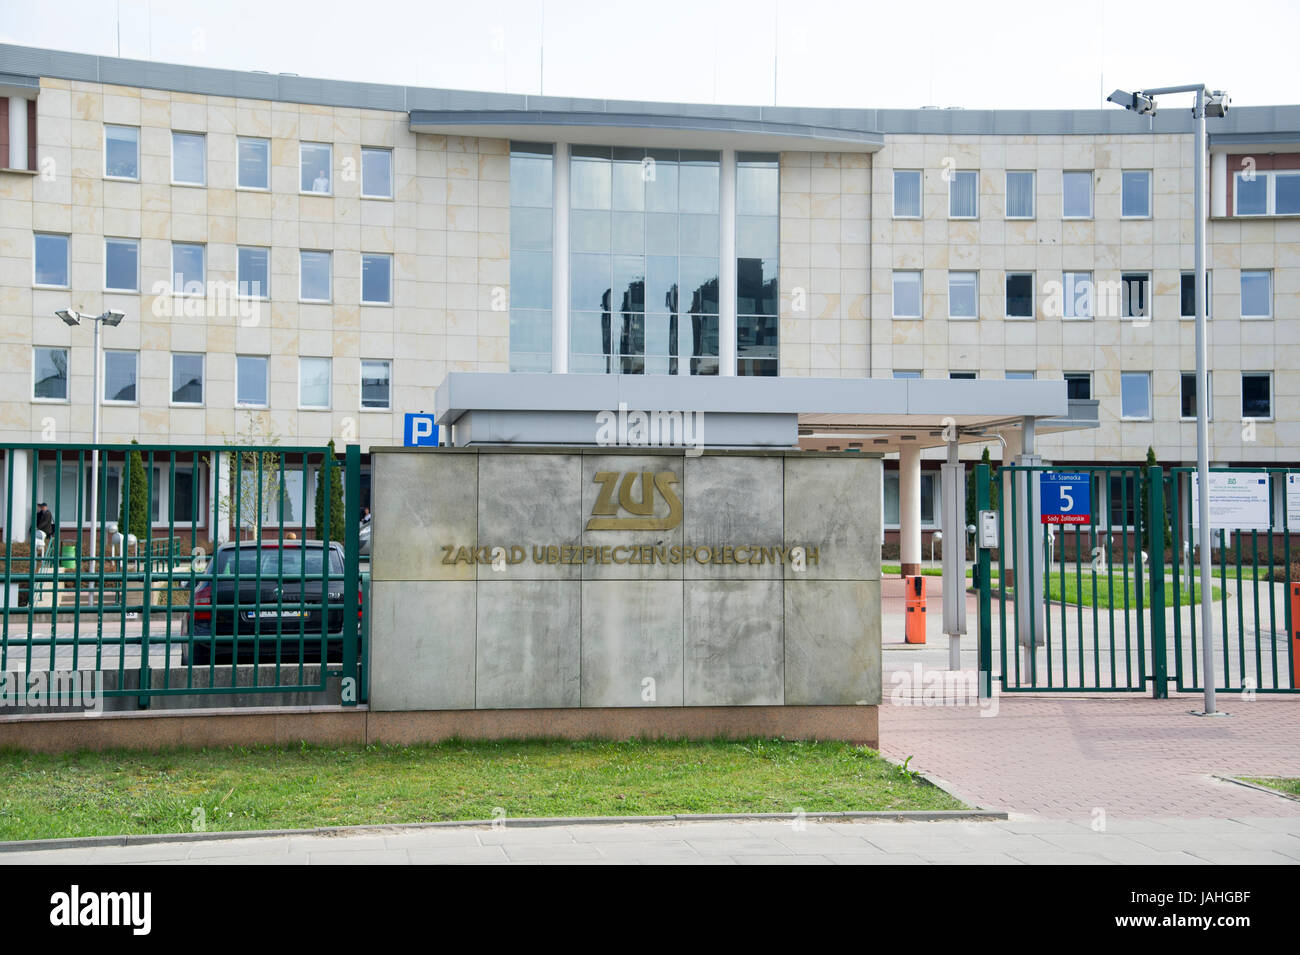 Social Insurance Institution (Zaklad Ubezpieczen Spolecznych ZUS) in Warsaw, Poland © Wojciech Strozyk / Alamy Stock Photo Stock Photo